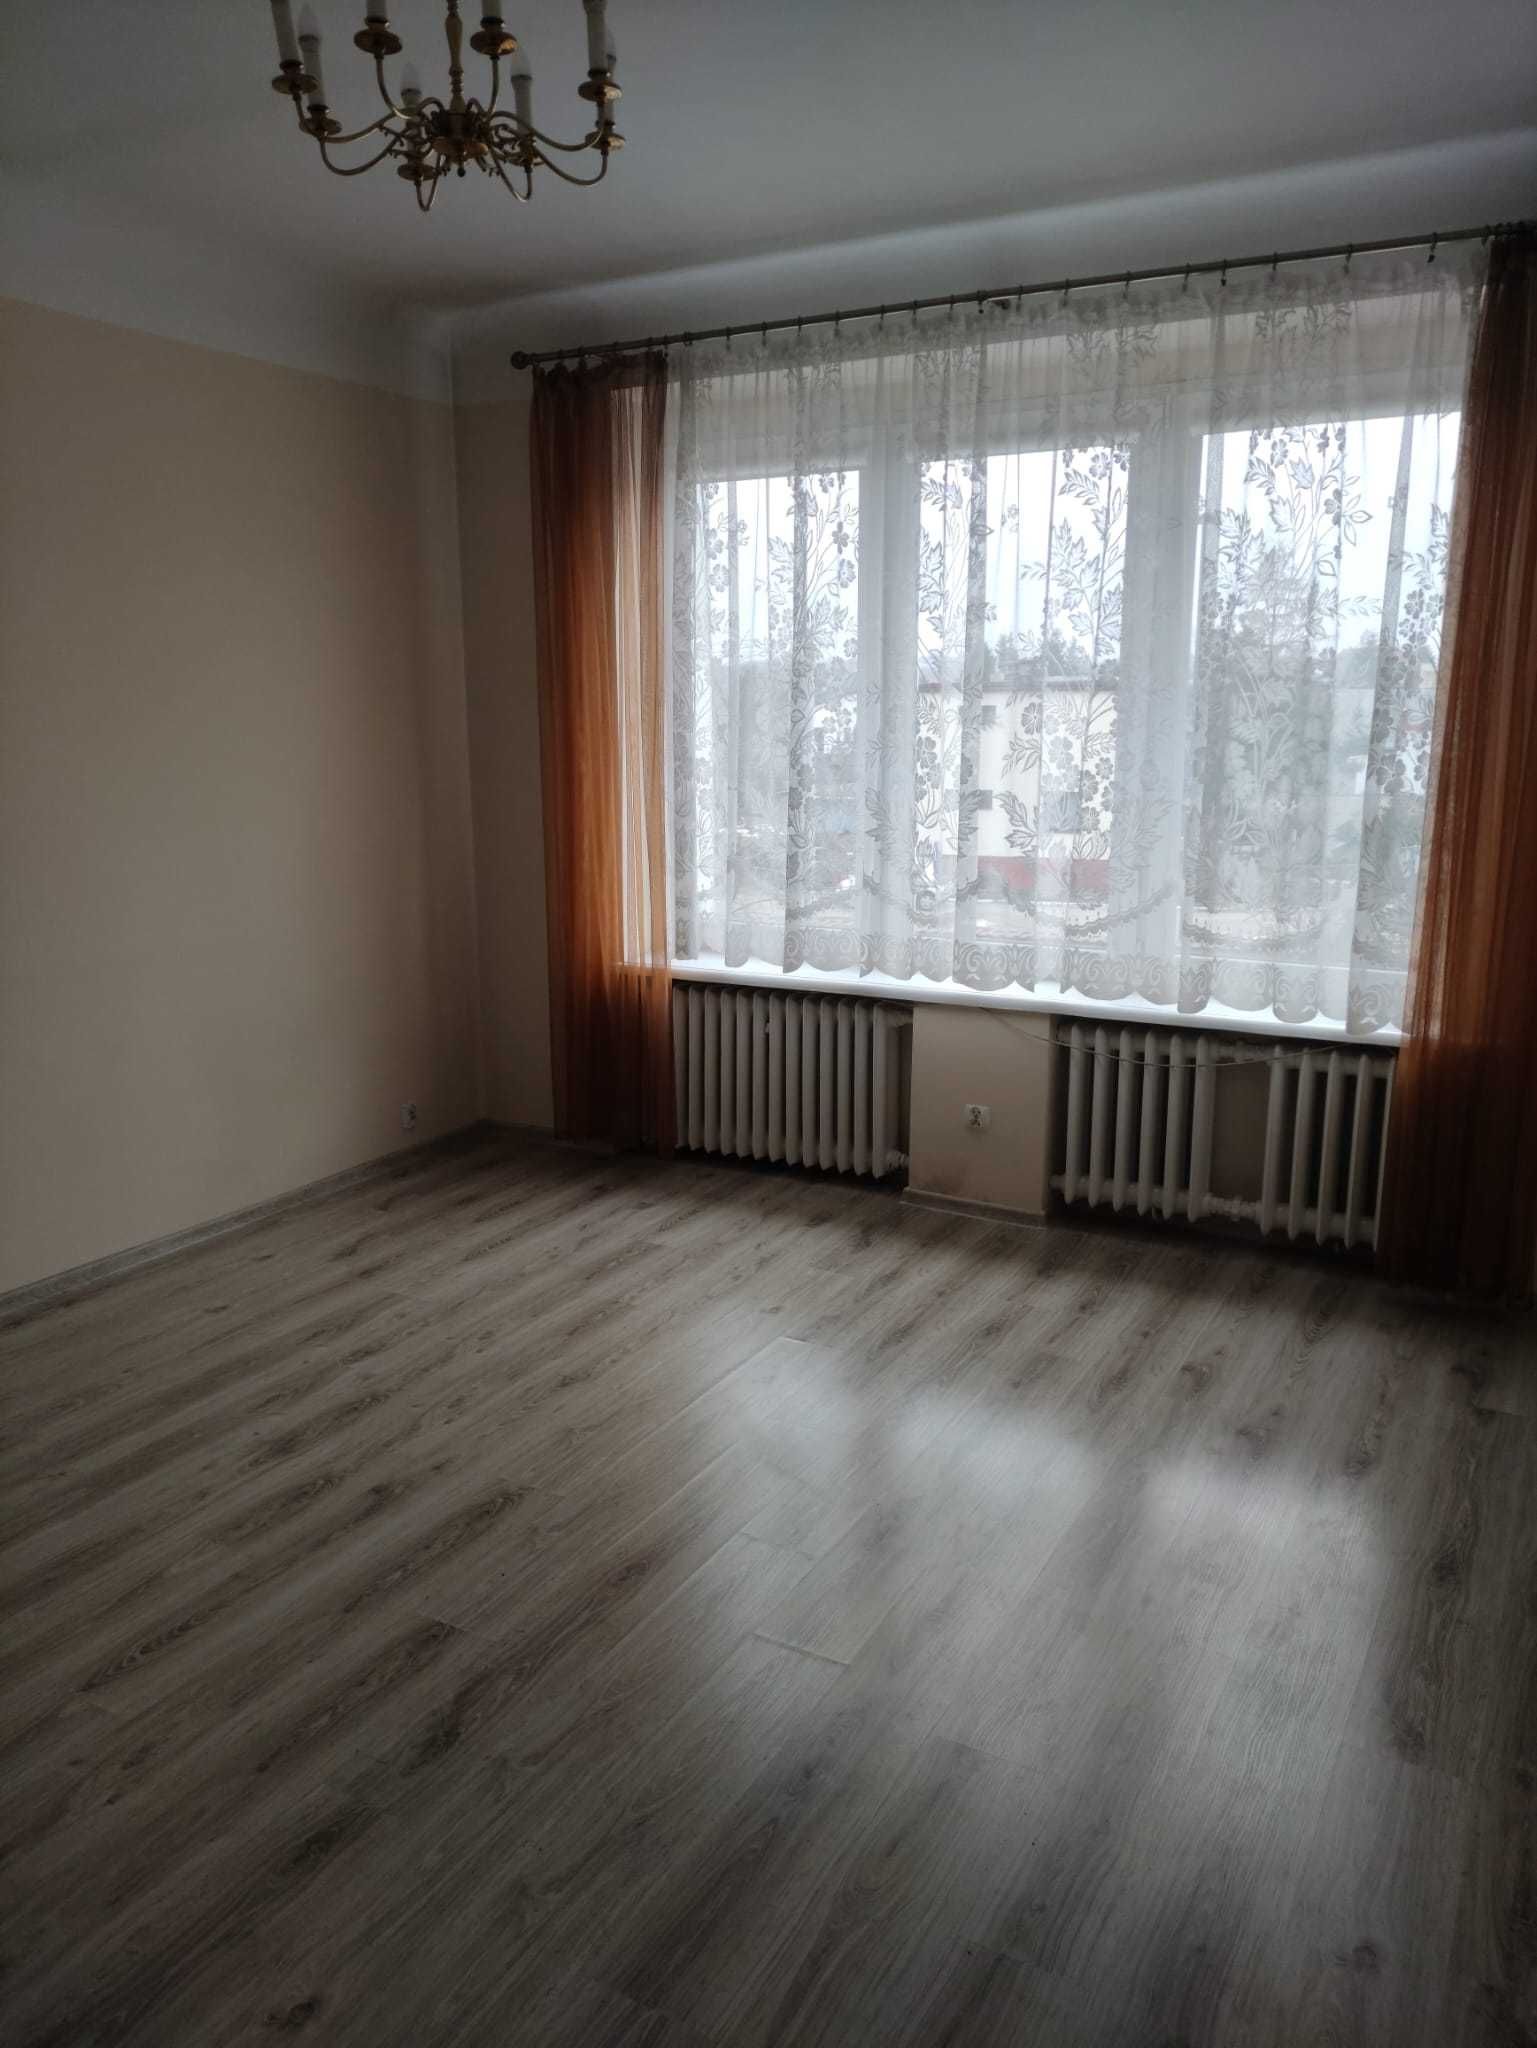 Konin, Kościuszki, mieszkanie 108 m2 z działką 666 m2 ,garaż 24 m2